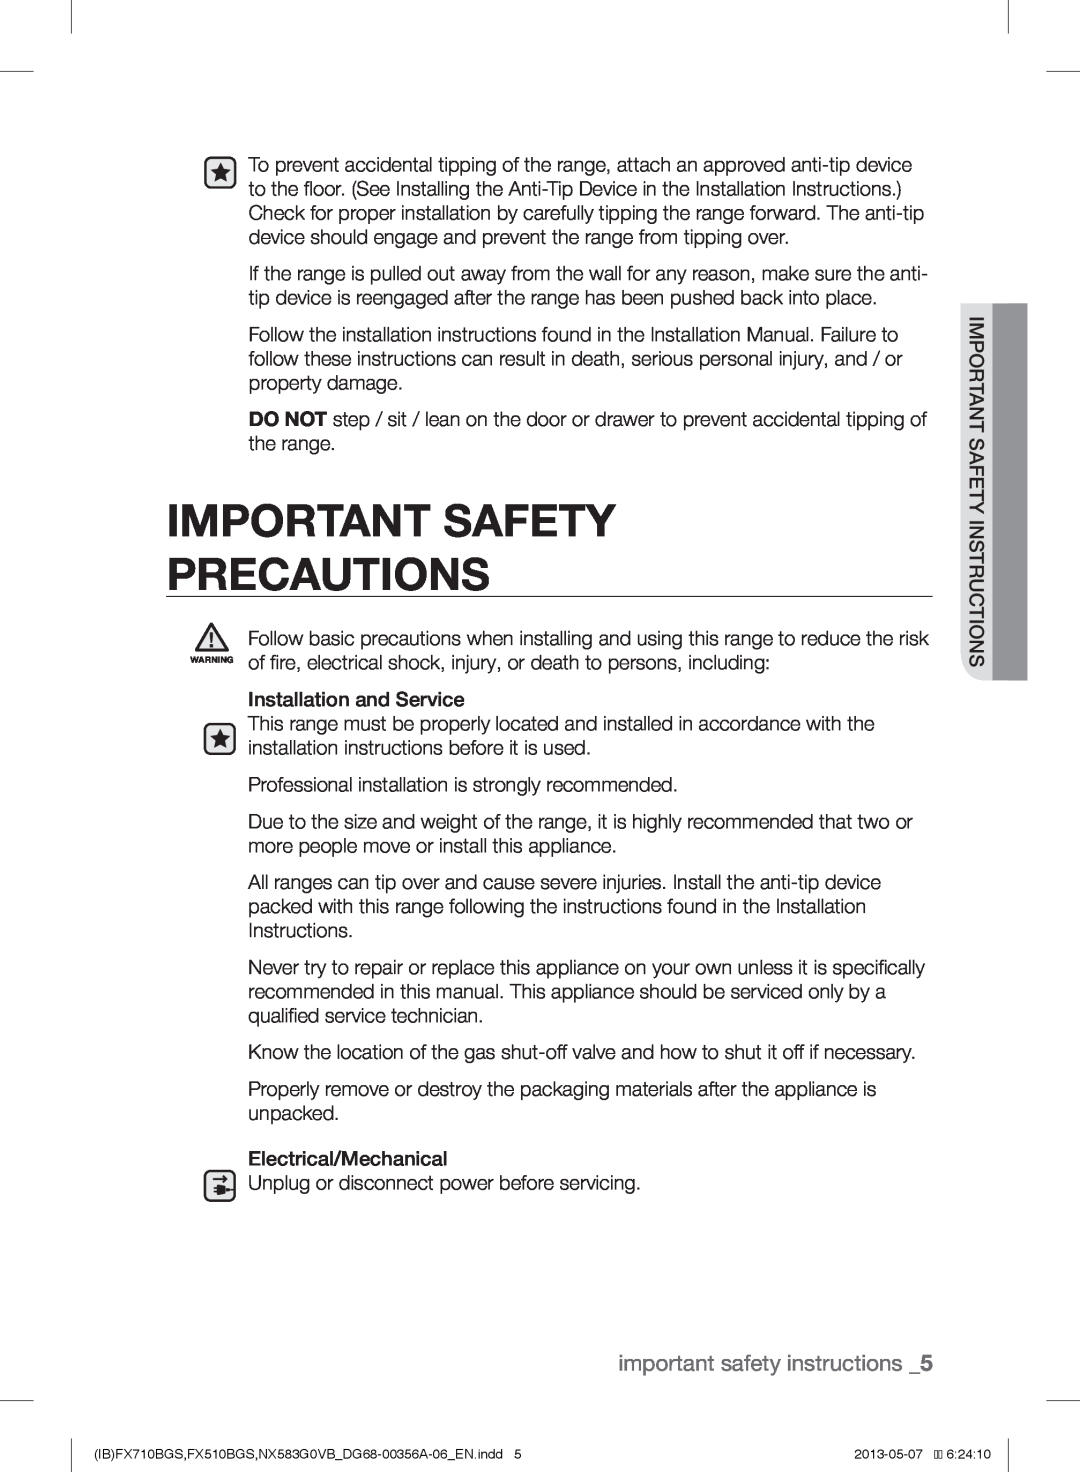 Samsung NX583GOVBBB, NX583GOVBSR, NX583GOVBWW, NX583GOVBBPKG Important Safety Precautions, important safety instructions 